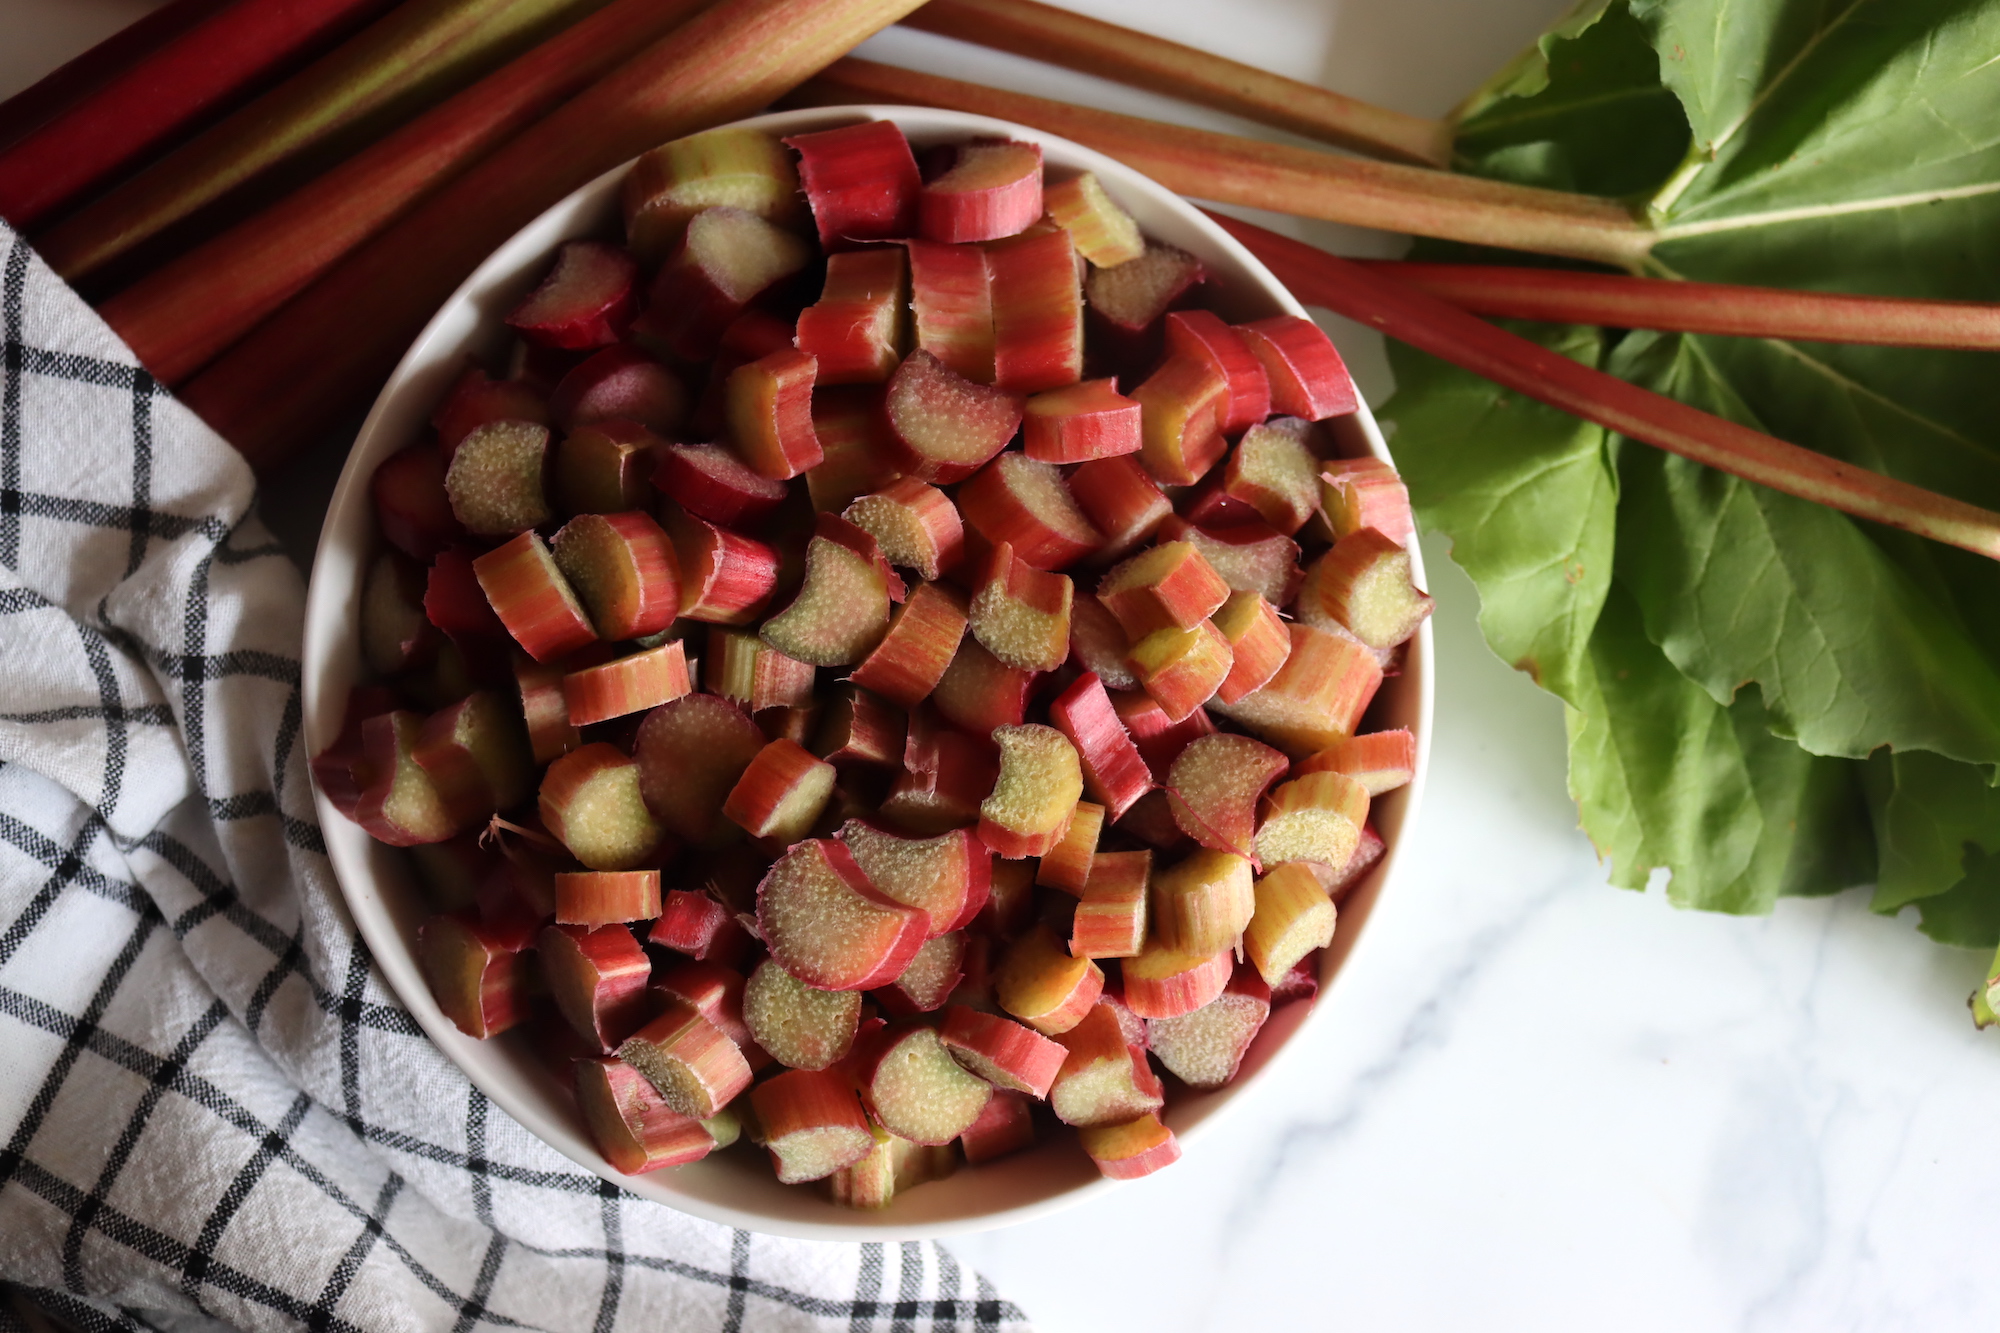 Ingredients for Rhubarb Jam